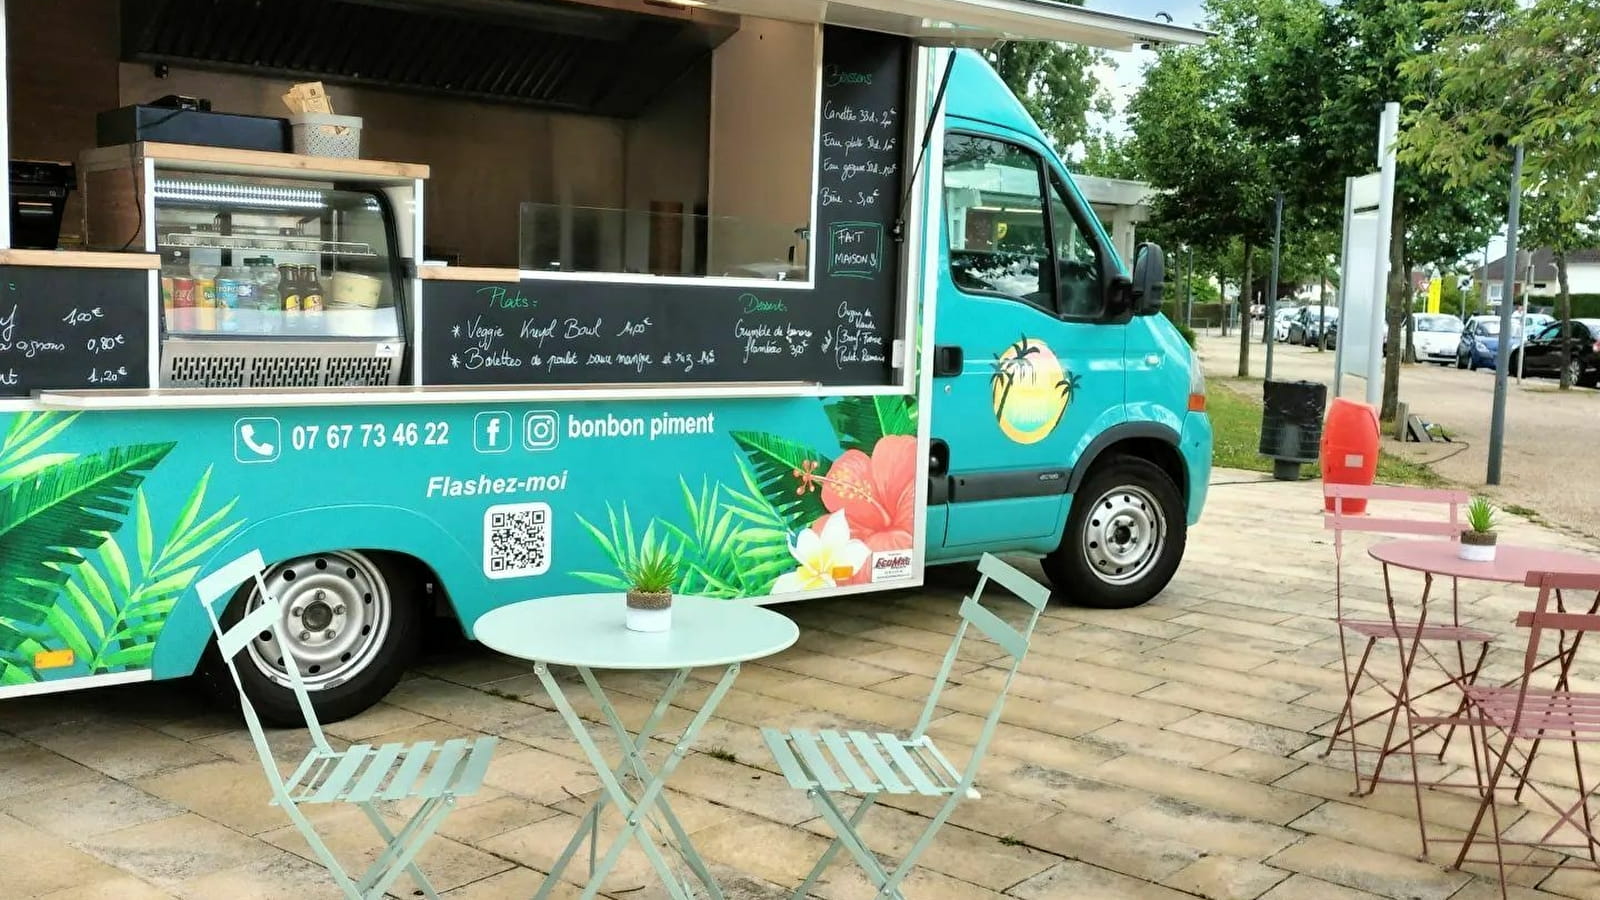 Bonbon Piment - Food truck